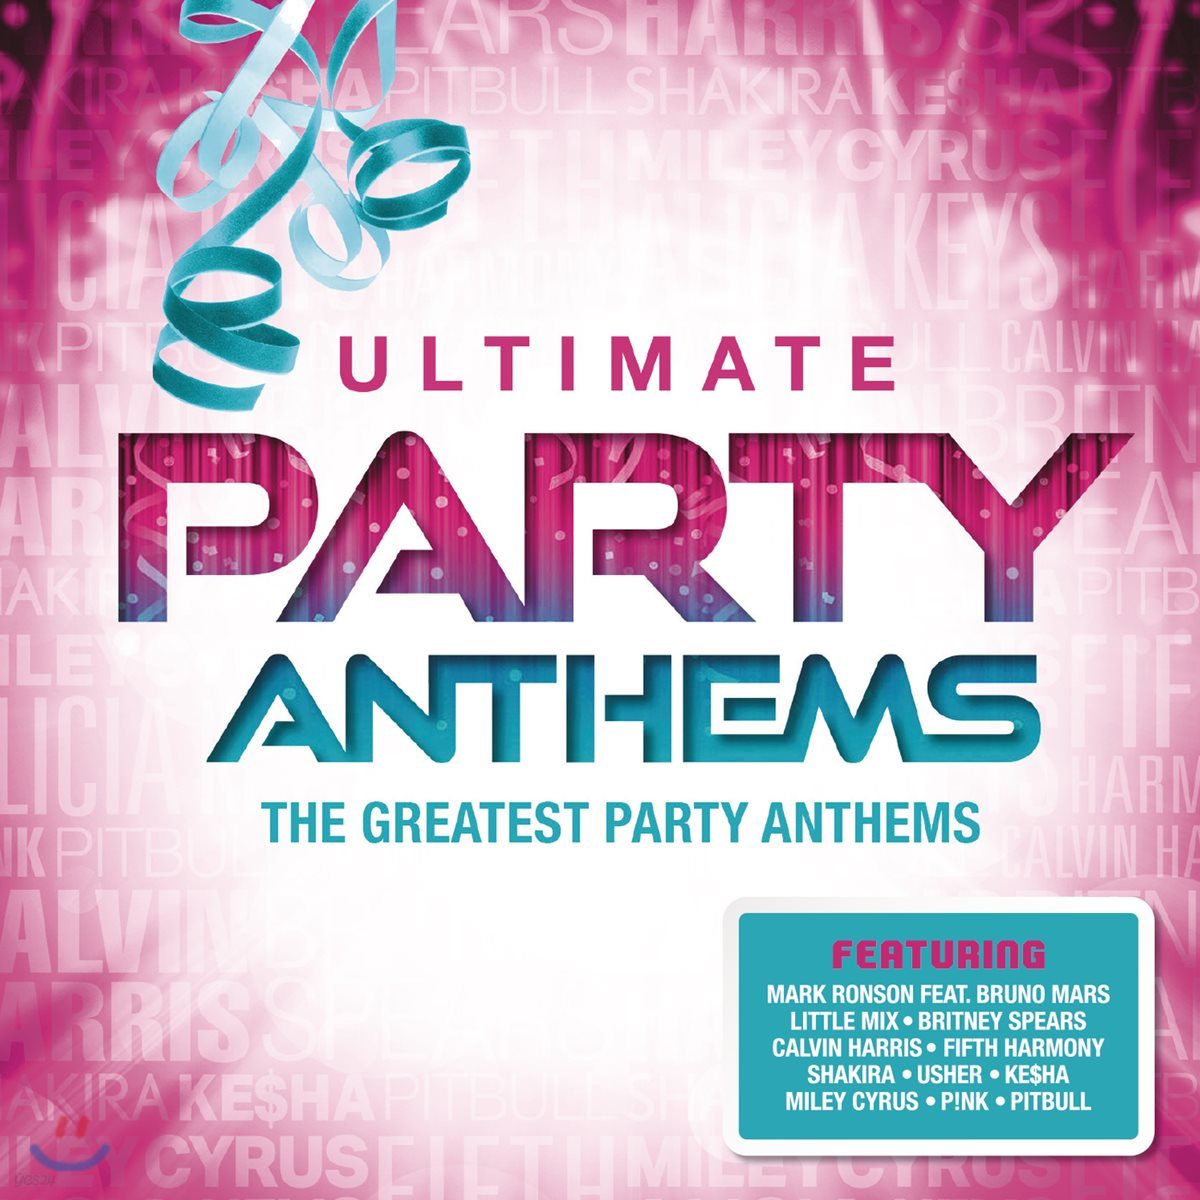 파티 음악 베스트 모음집 (The Ultimate Party Anthems : The Greatest Music For Party)